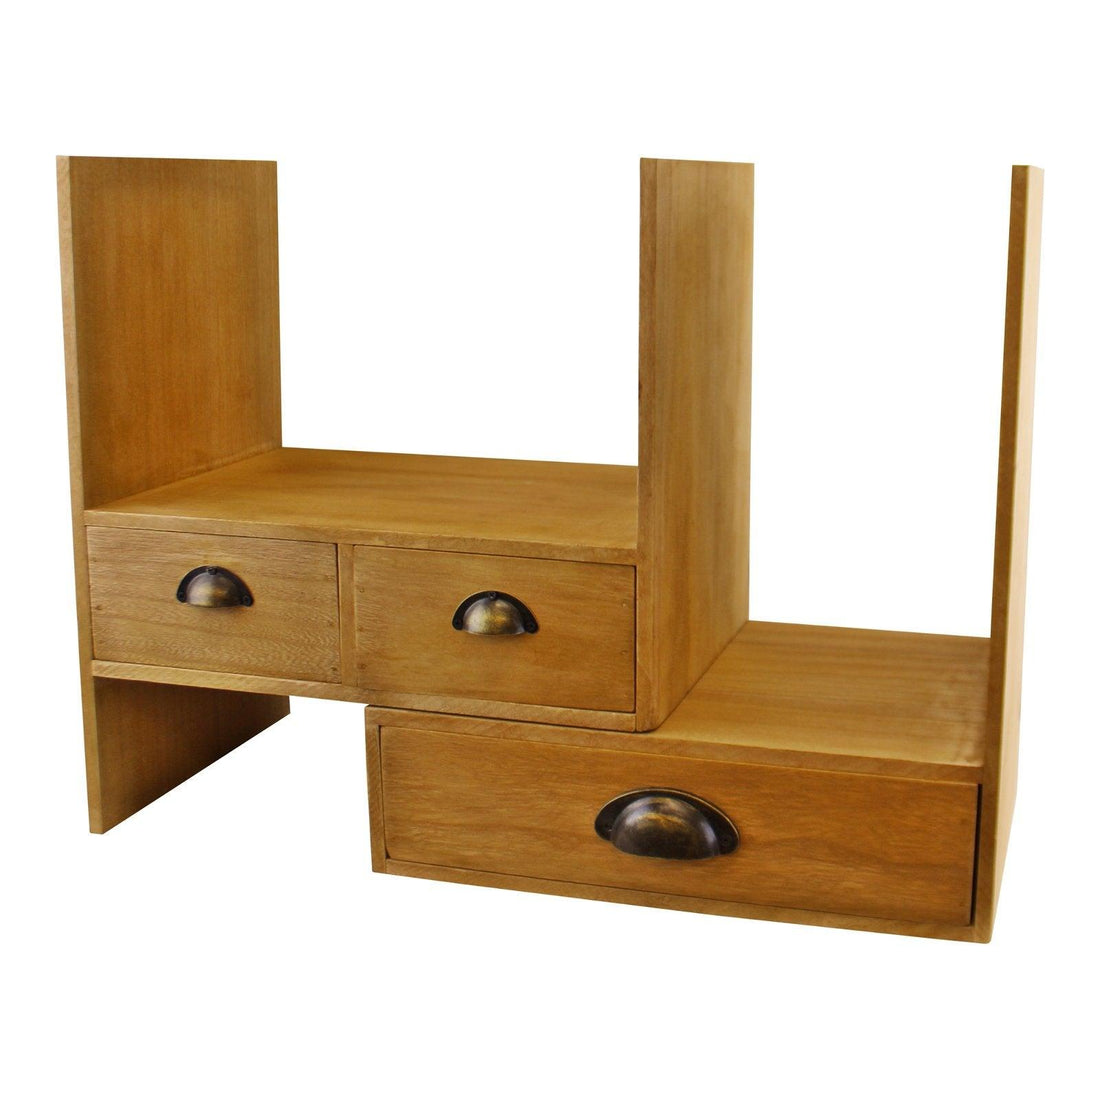 Wooden Desktop Storage Unit - £59.99 - Office Storage Solutions 